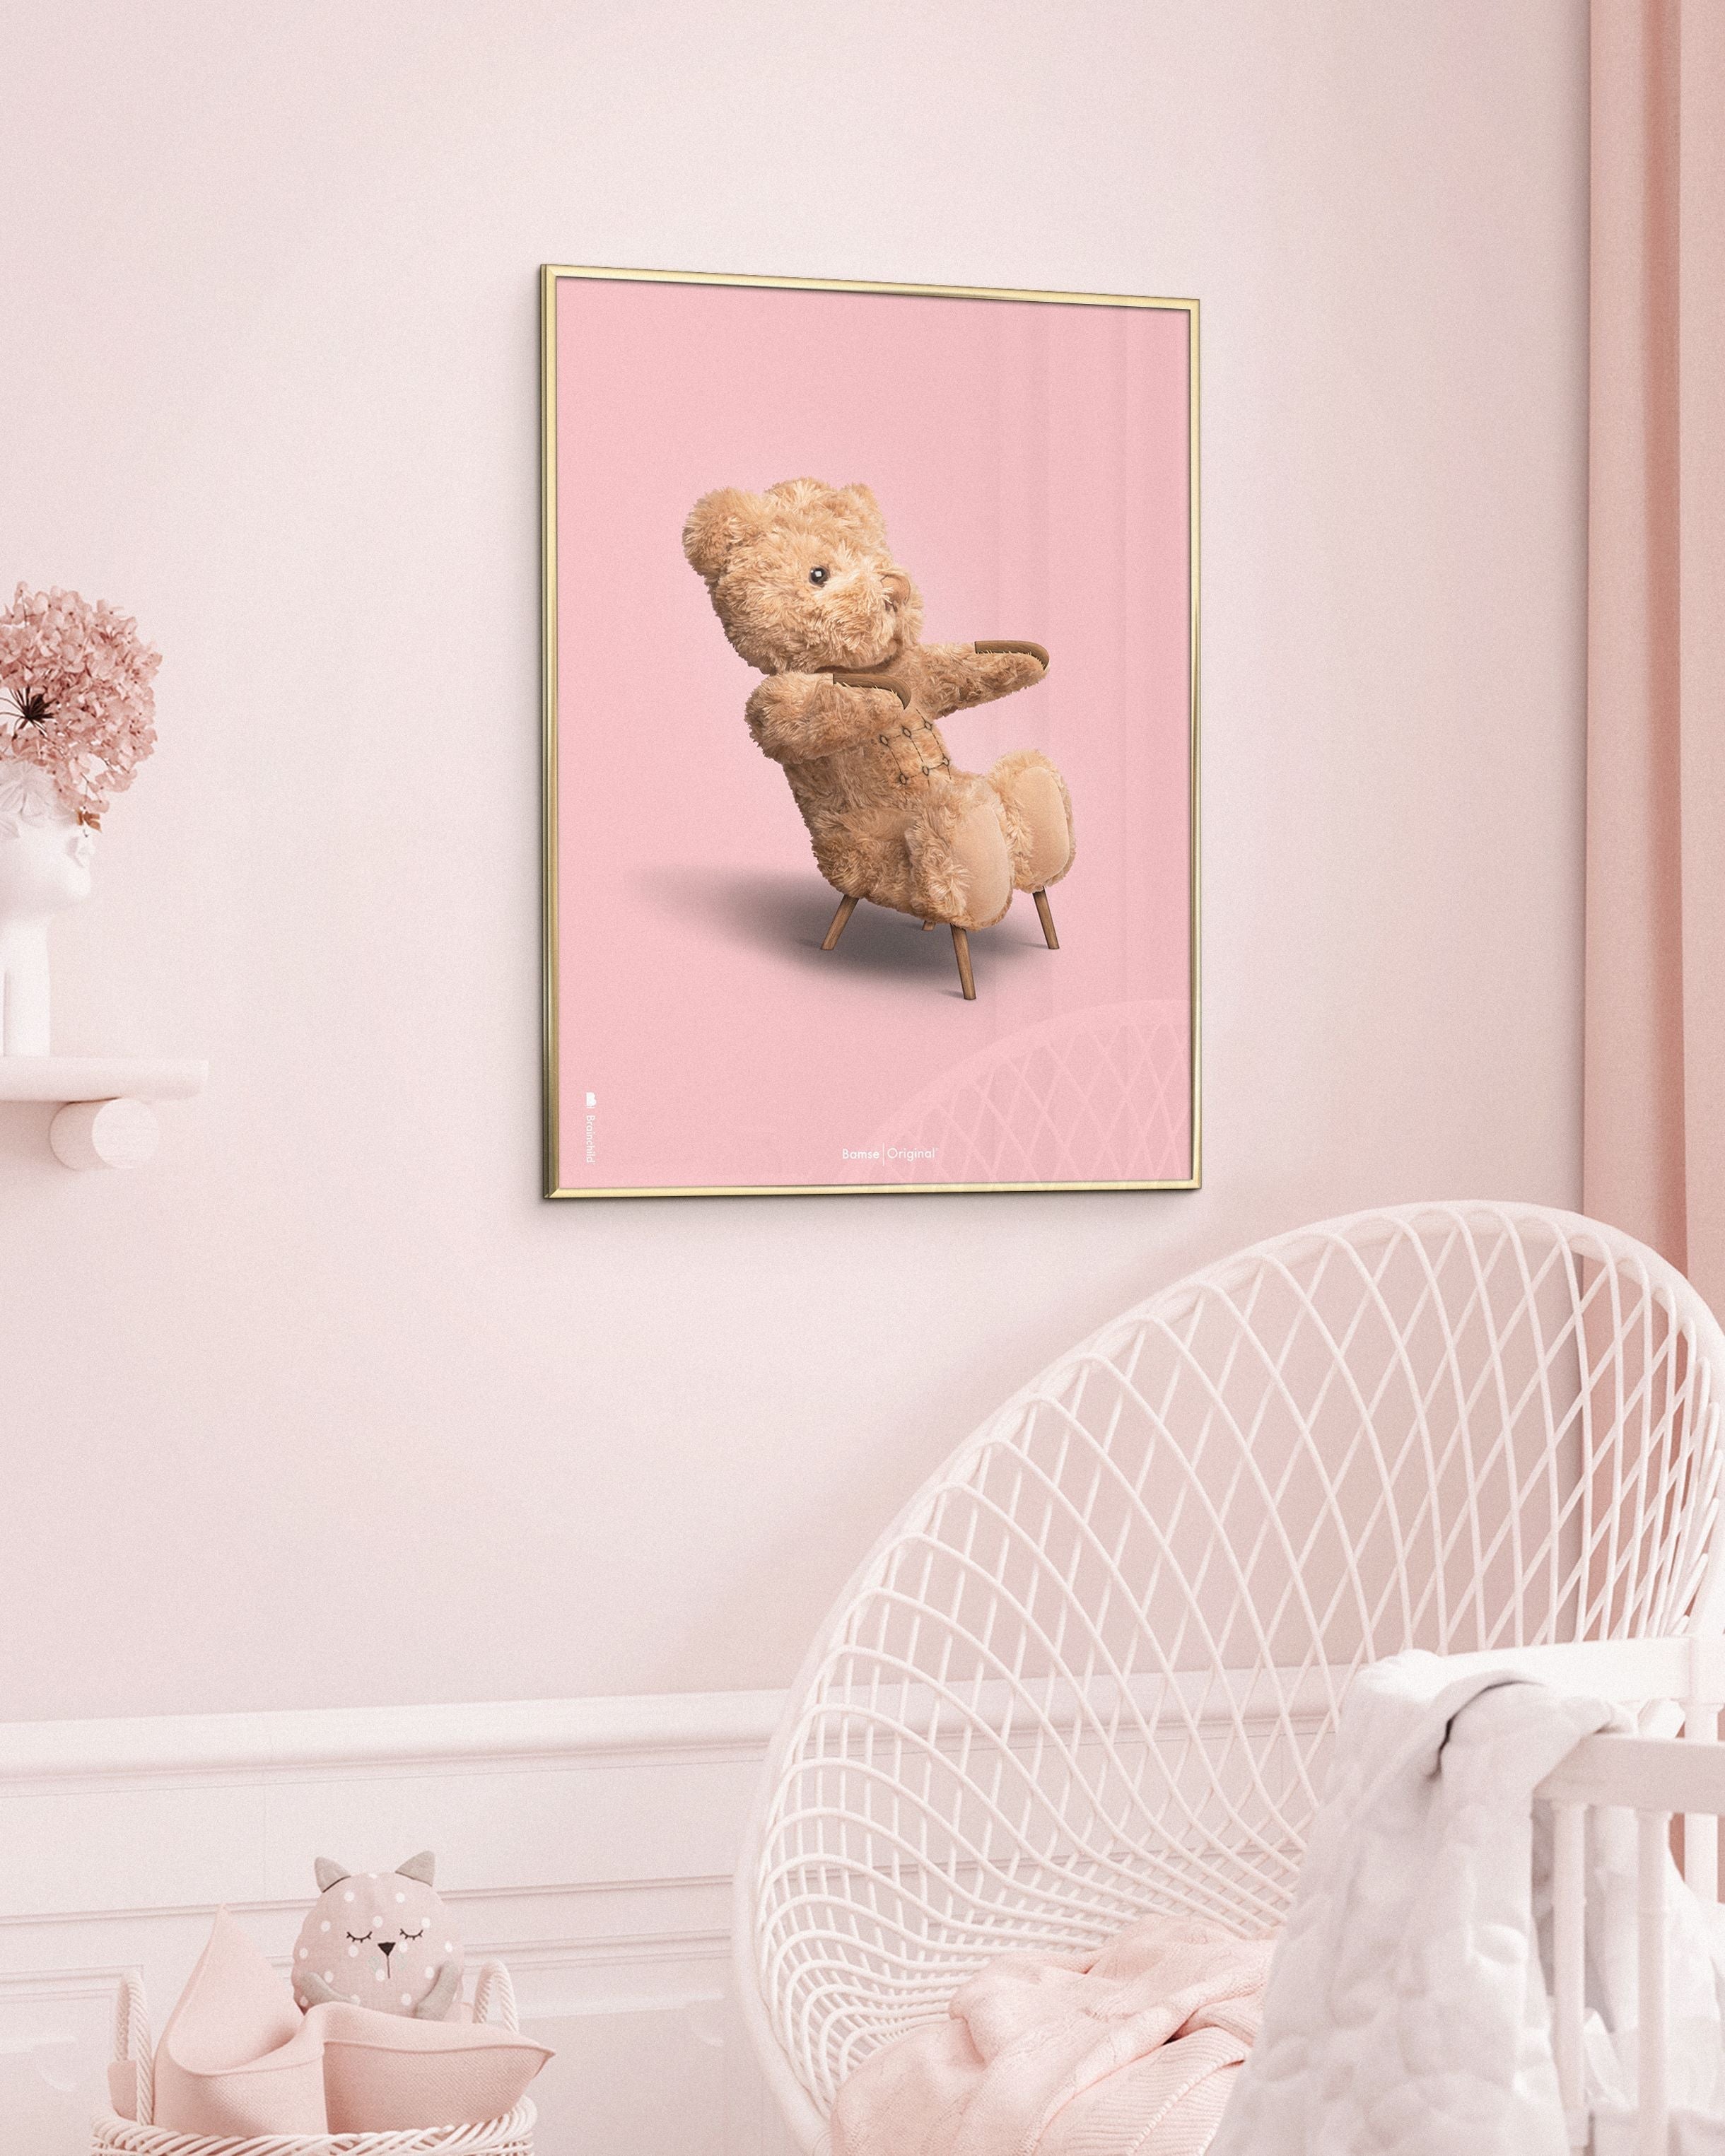 Brainchild Teddy Bear Classic juliste ilman kehystä 30x40 cm, vaaleanpunainen tausta